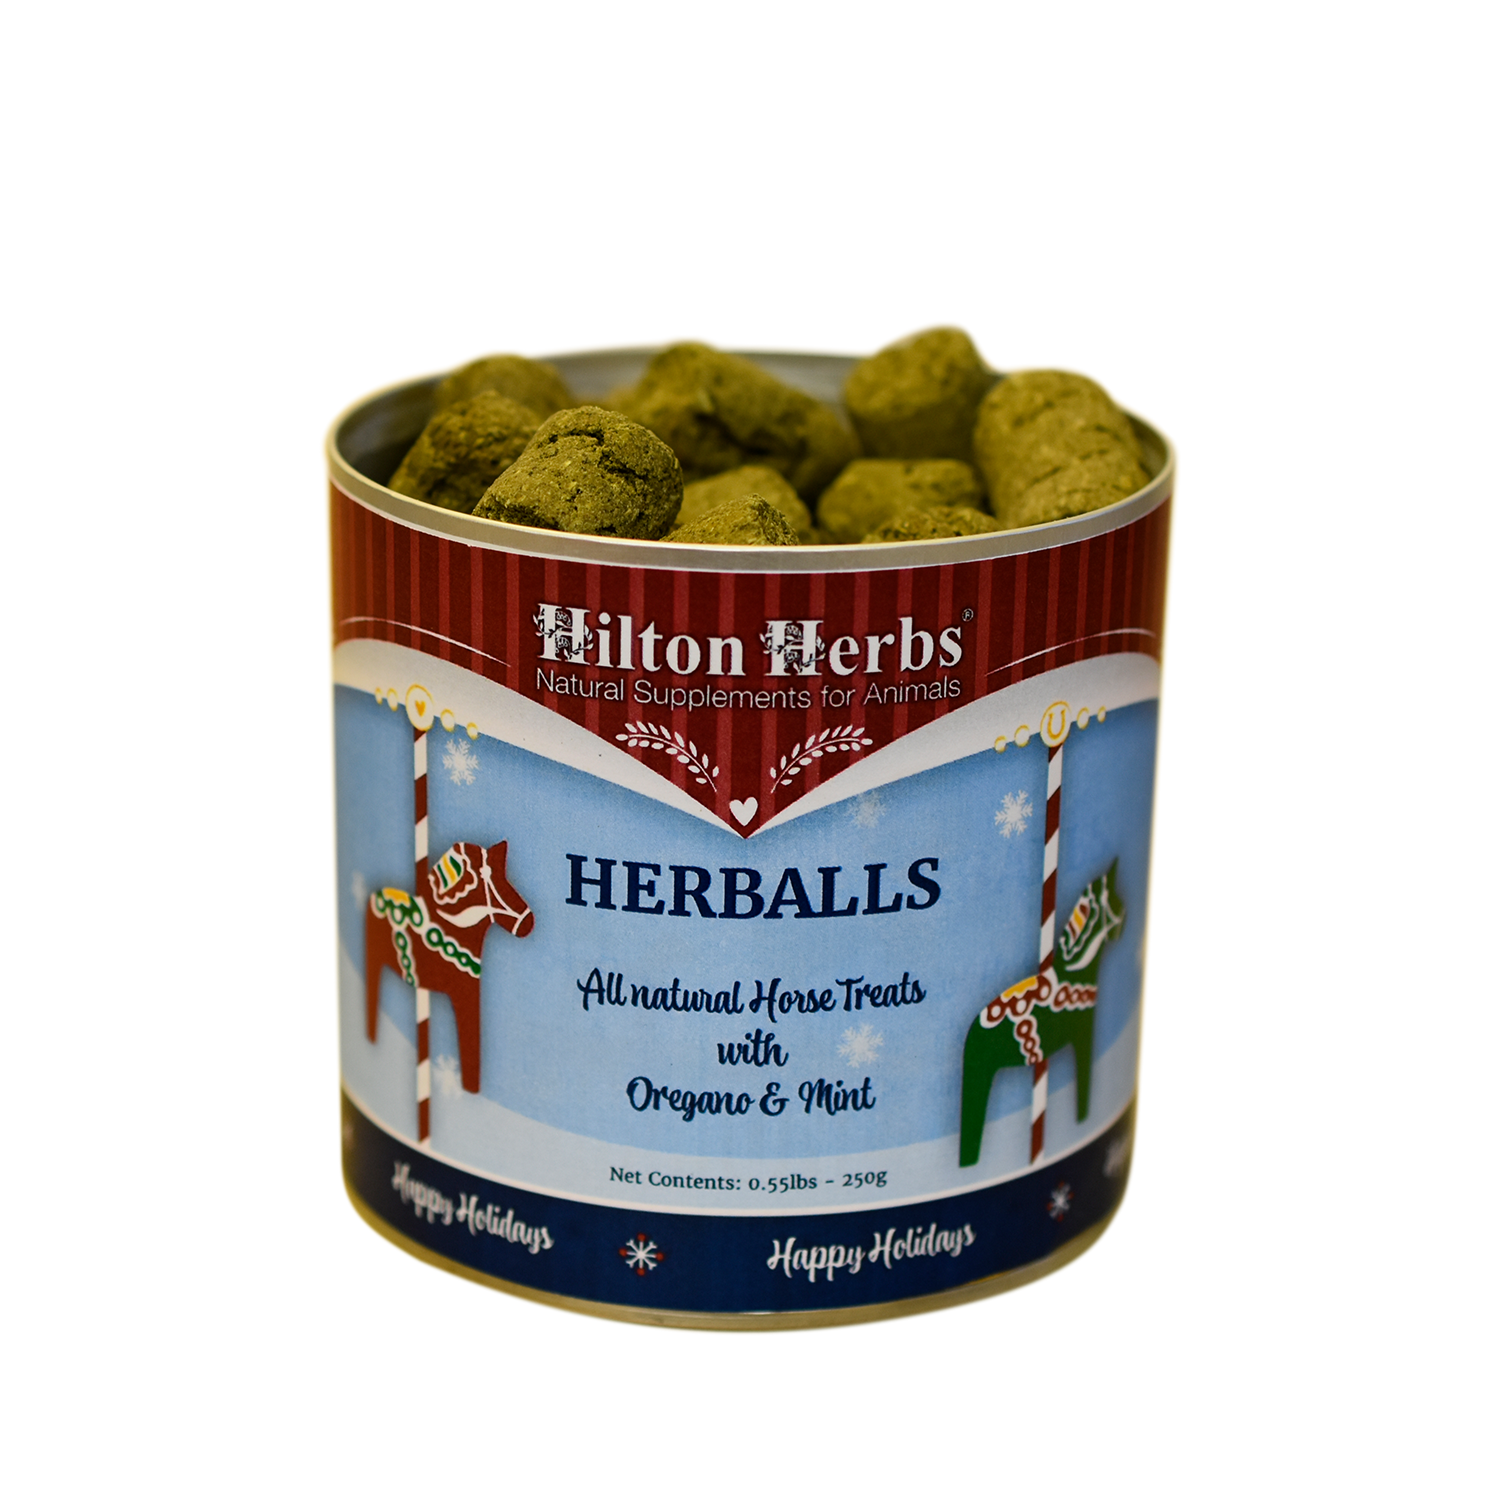 Herballs - tub open - 250g Tub